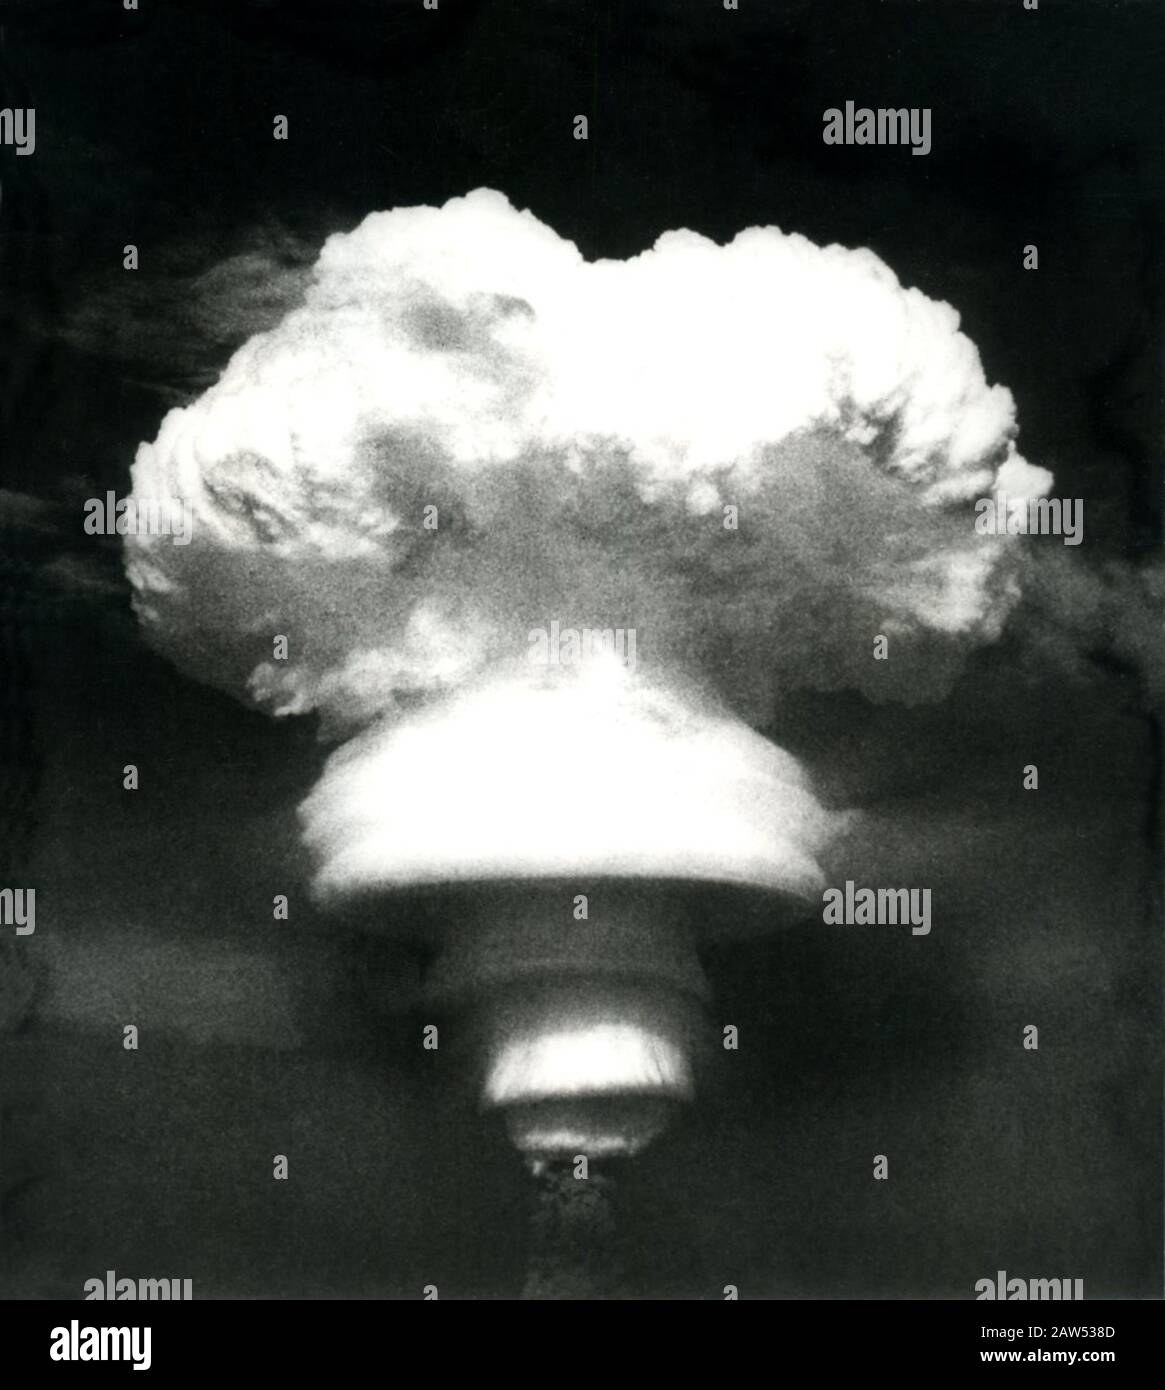 1967 ca , CINA : TEST NUCLEARE cinese - ATTACCO ATOMICO NUCLEO energia - ENERGIA - ATTACCO NUCLEARE - BOMBA ATOMICA - foto storiche - HISTOR Foto Stock